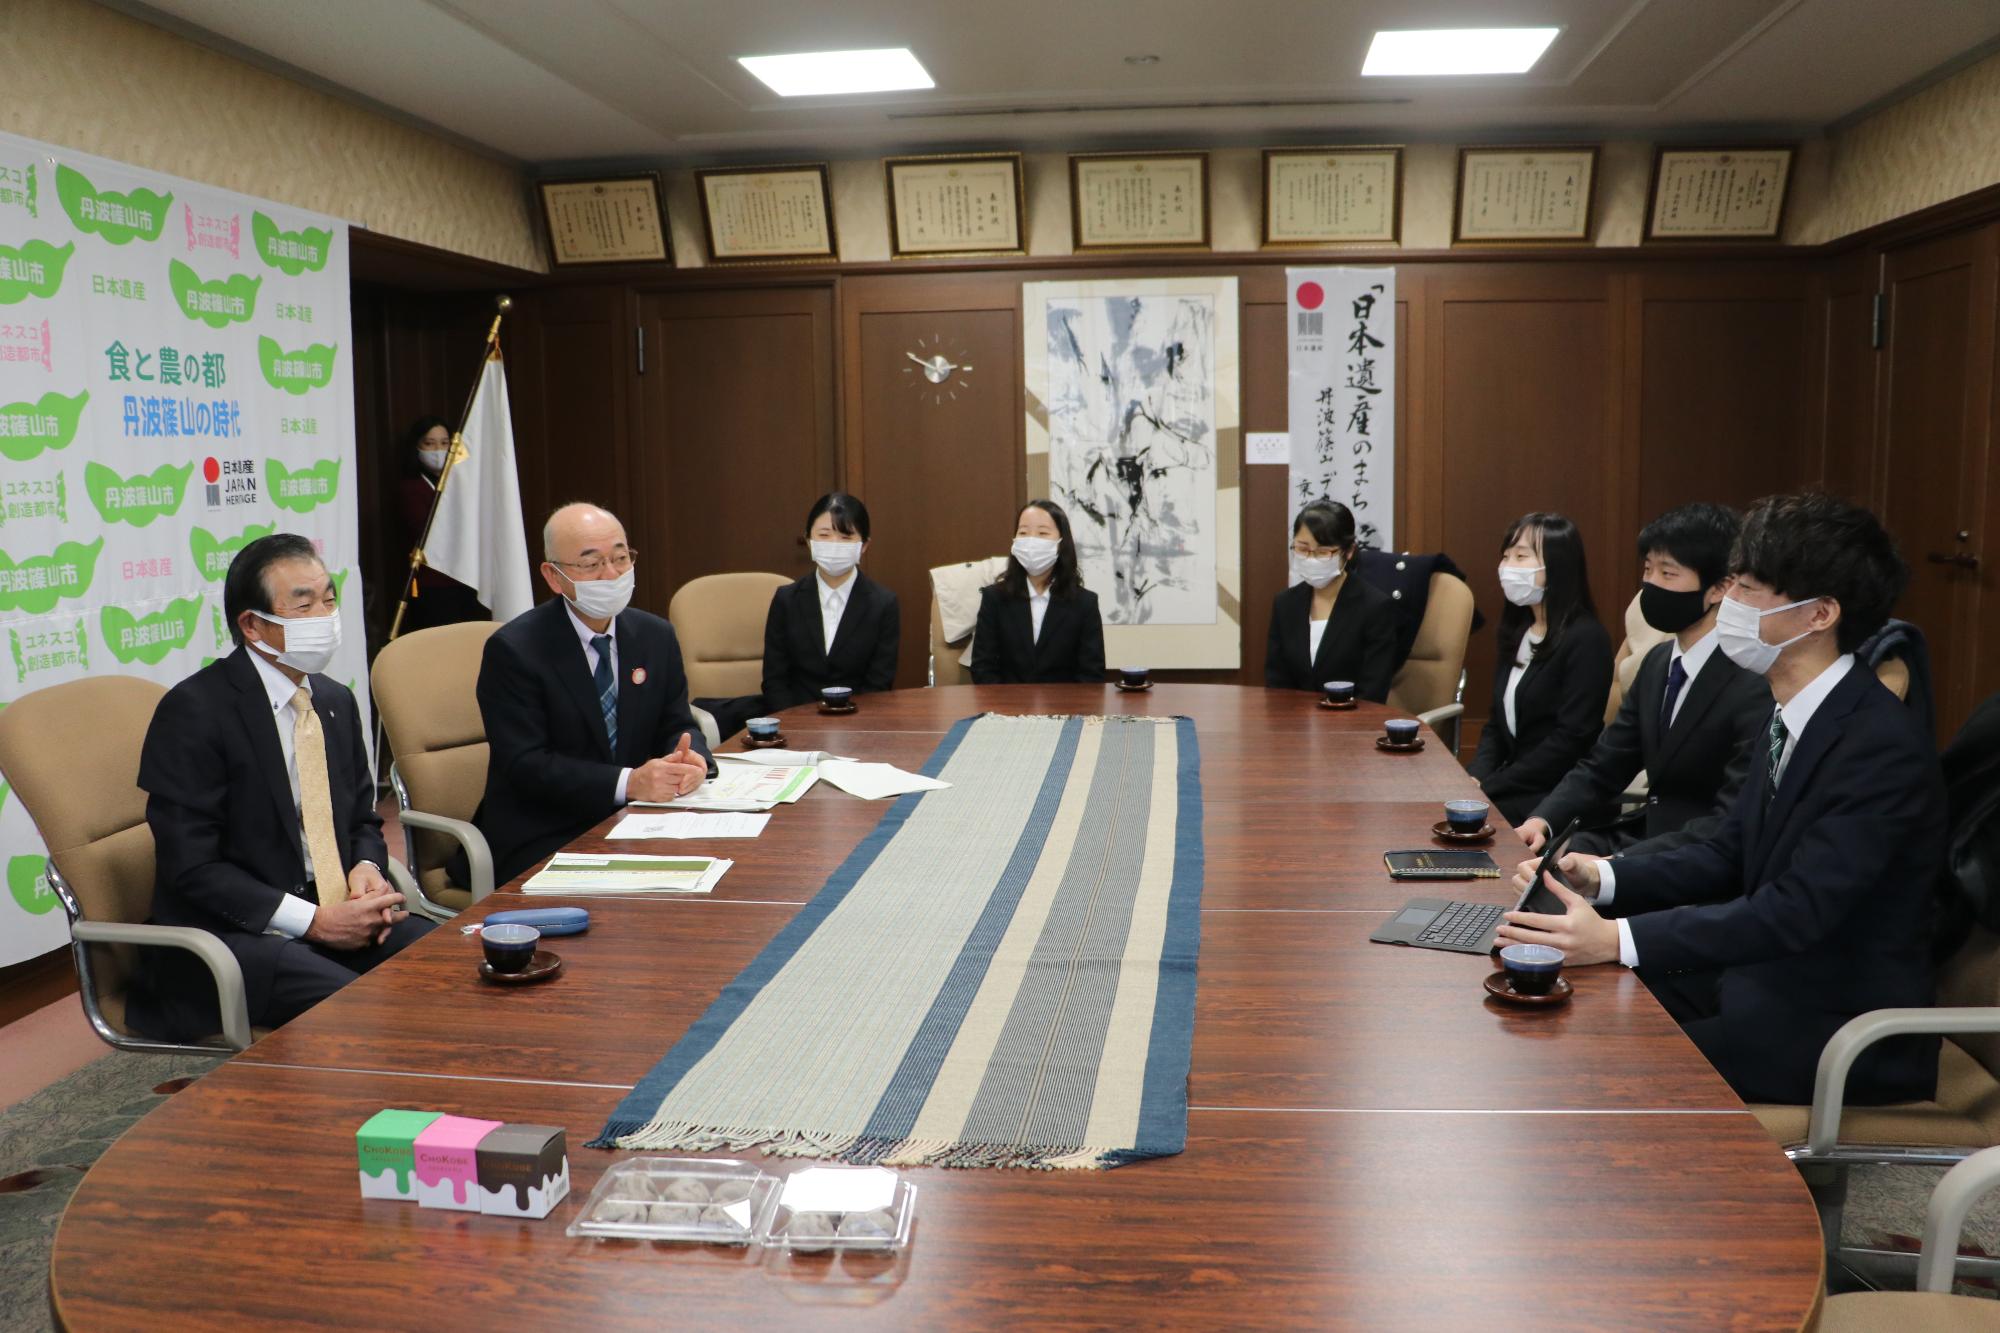 応接室で市長に受賞報告をする神戸大学の学生たち